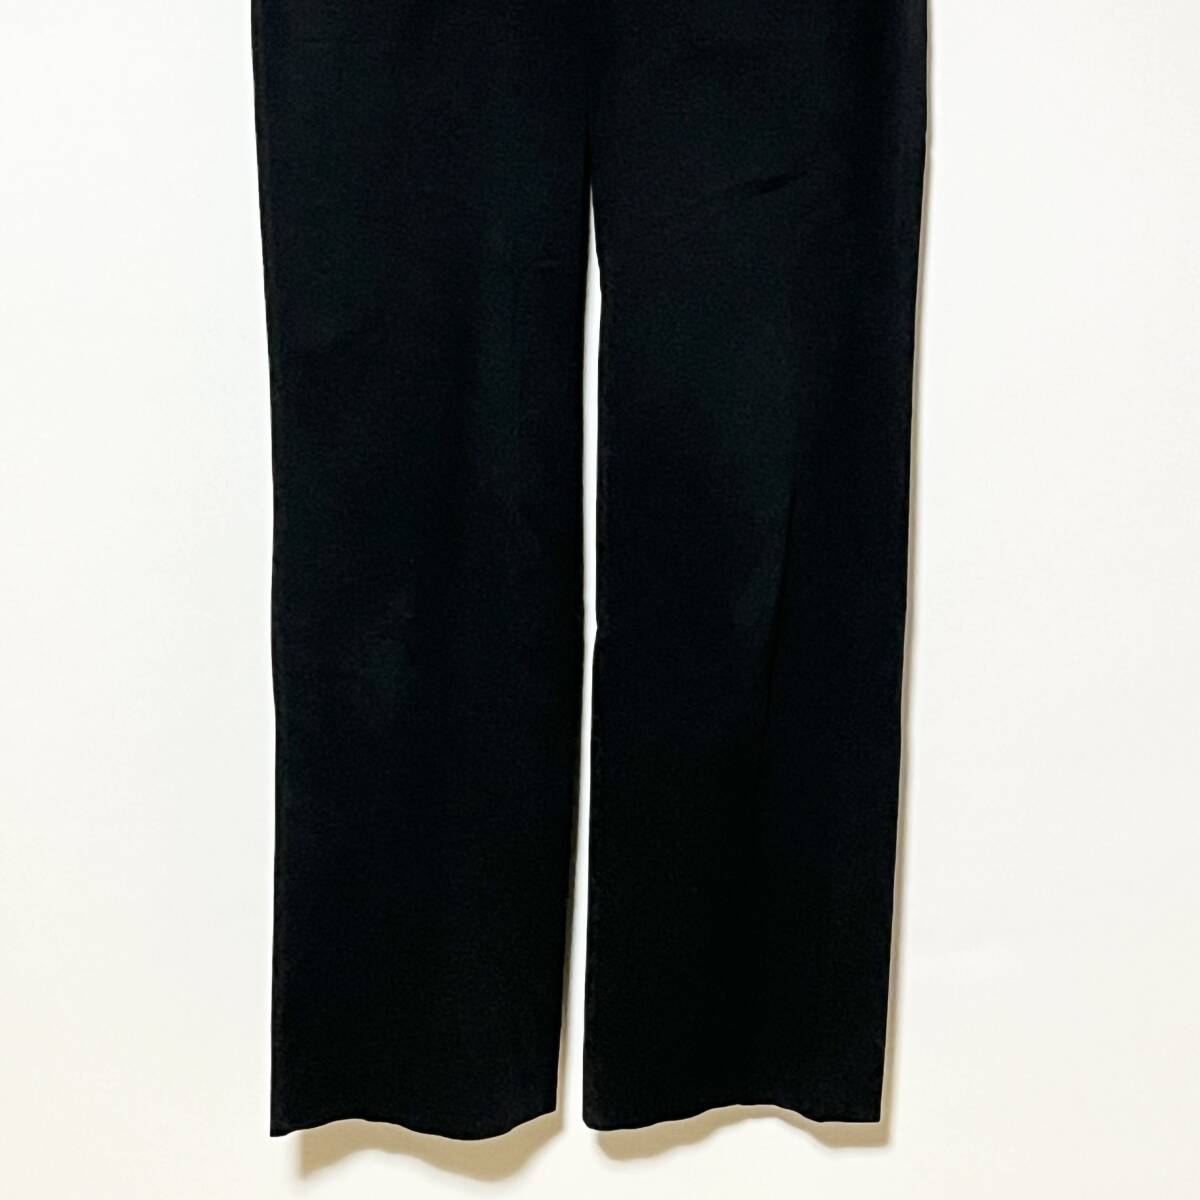 GEORGES RECH ジョルジュレッシュ パンツ PARIS レディース ズボン size38 黒 ブラック パンツ ファッション 女性 S M L X XL サイズ_画像6